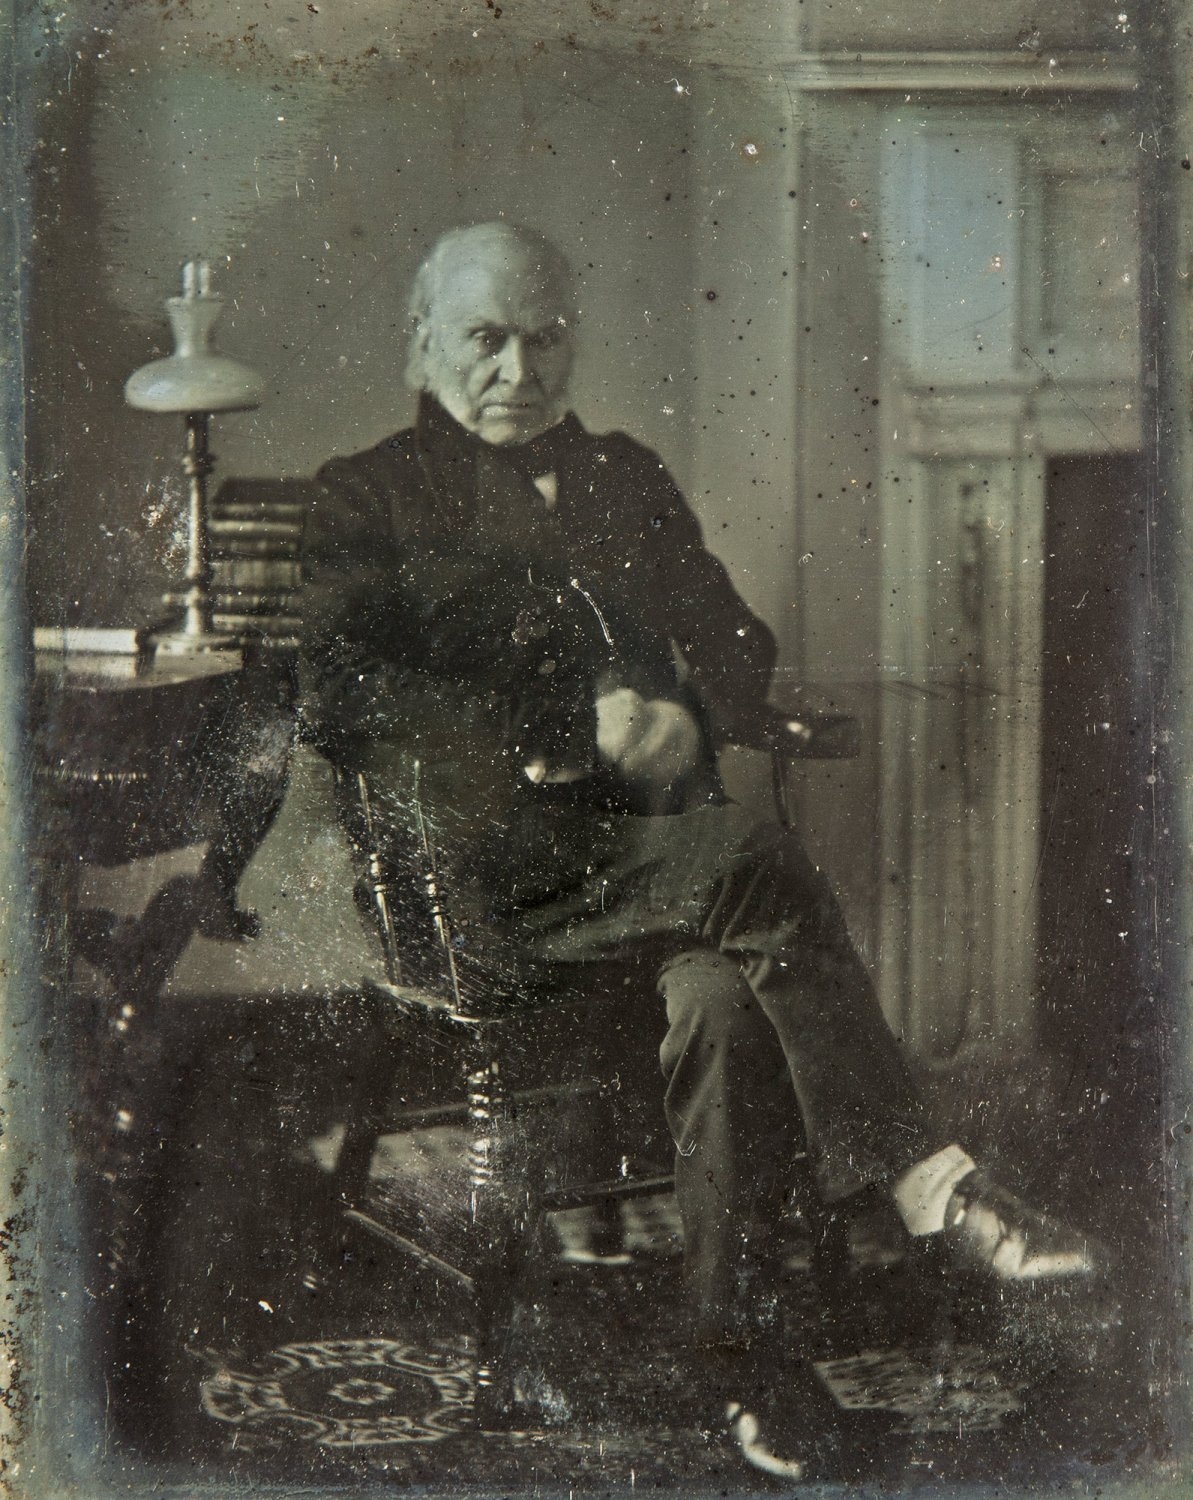 Photograph of John Quincy Adams taken in 1843